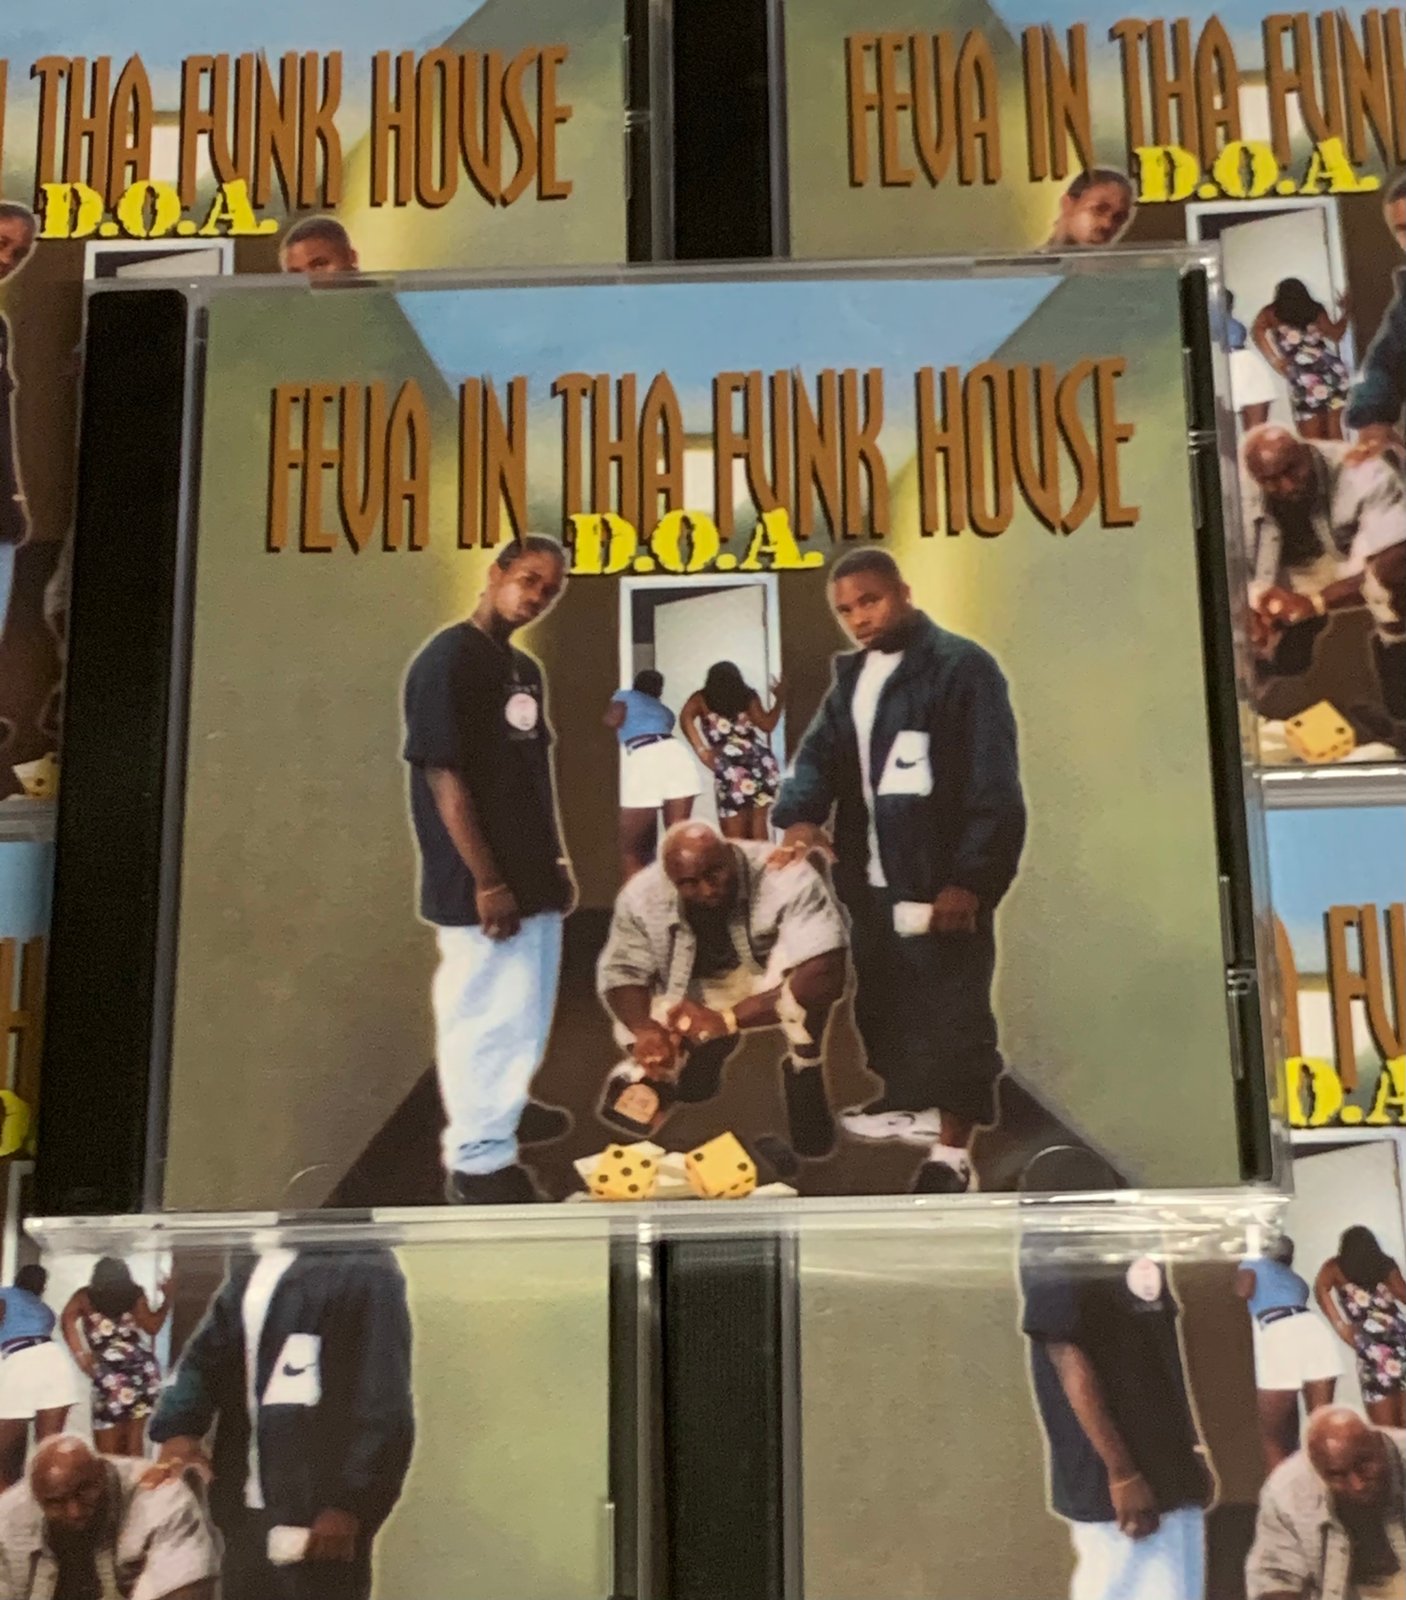 CD: D.O.A. - FEVA IN THA FUNK HOUSE 1996-2022 REISSUE 